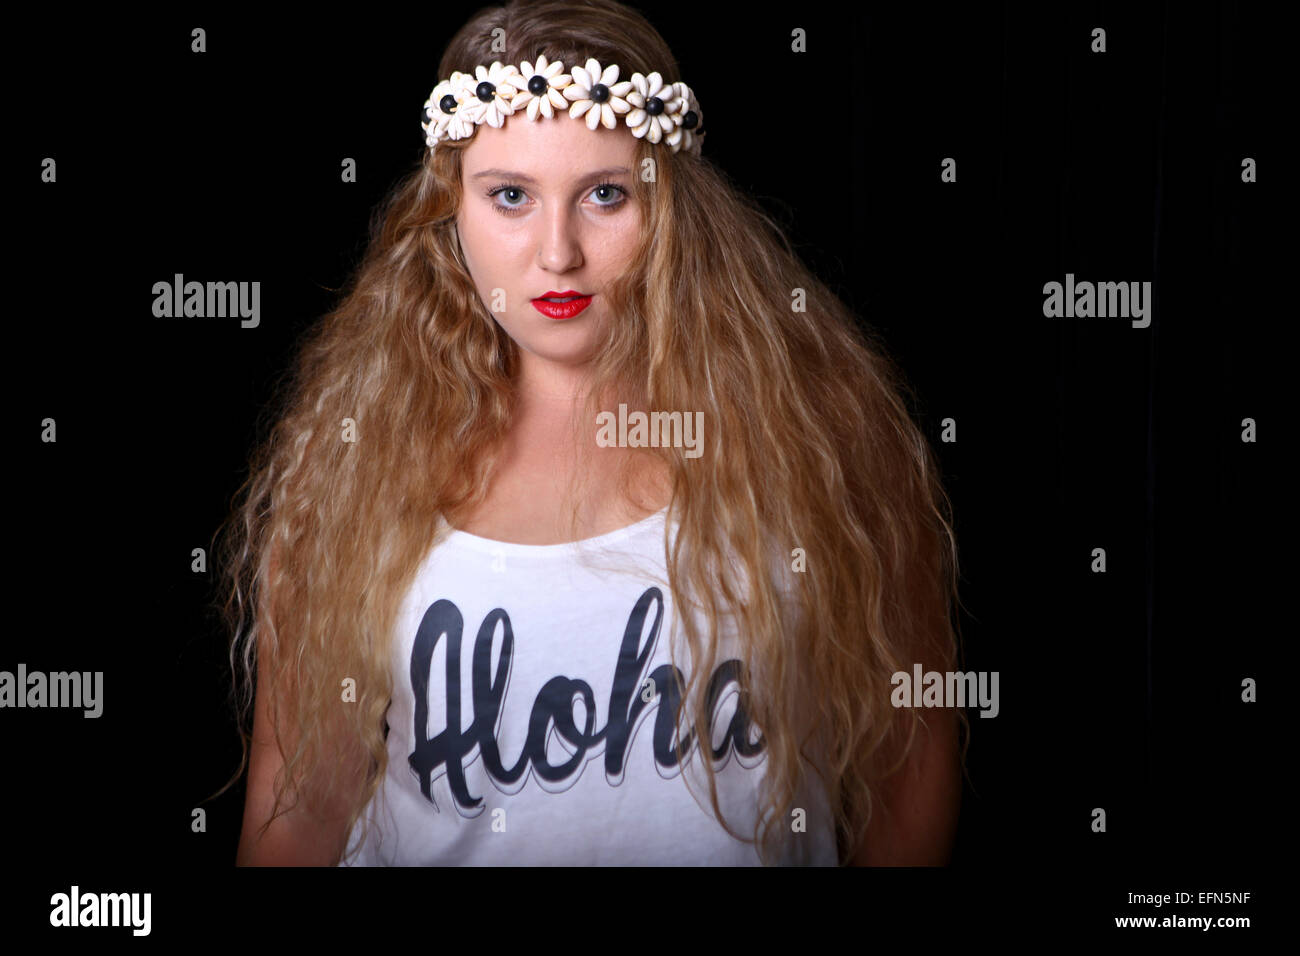 Junge weibliche Teenager mit langen blonden Haaren und einem Kranz von Blumen auf dem Kopf. Modell veröffentlicht Stockfoto